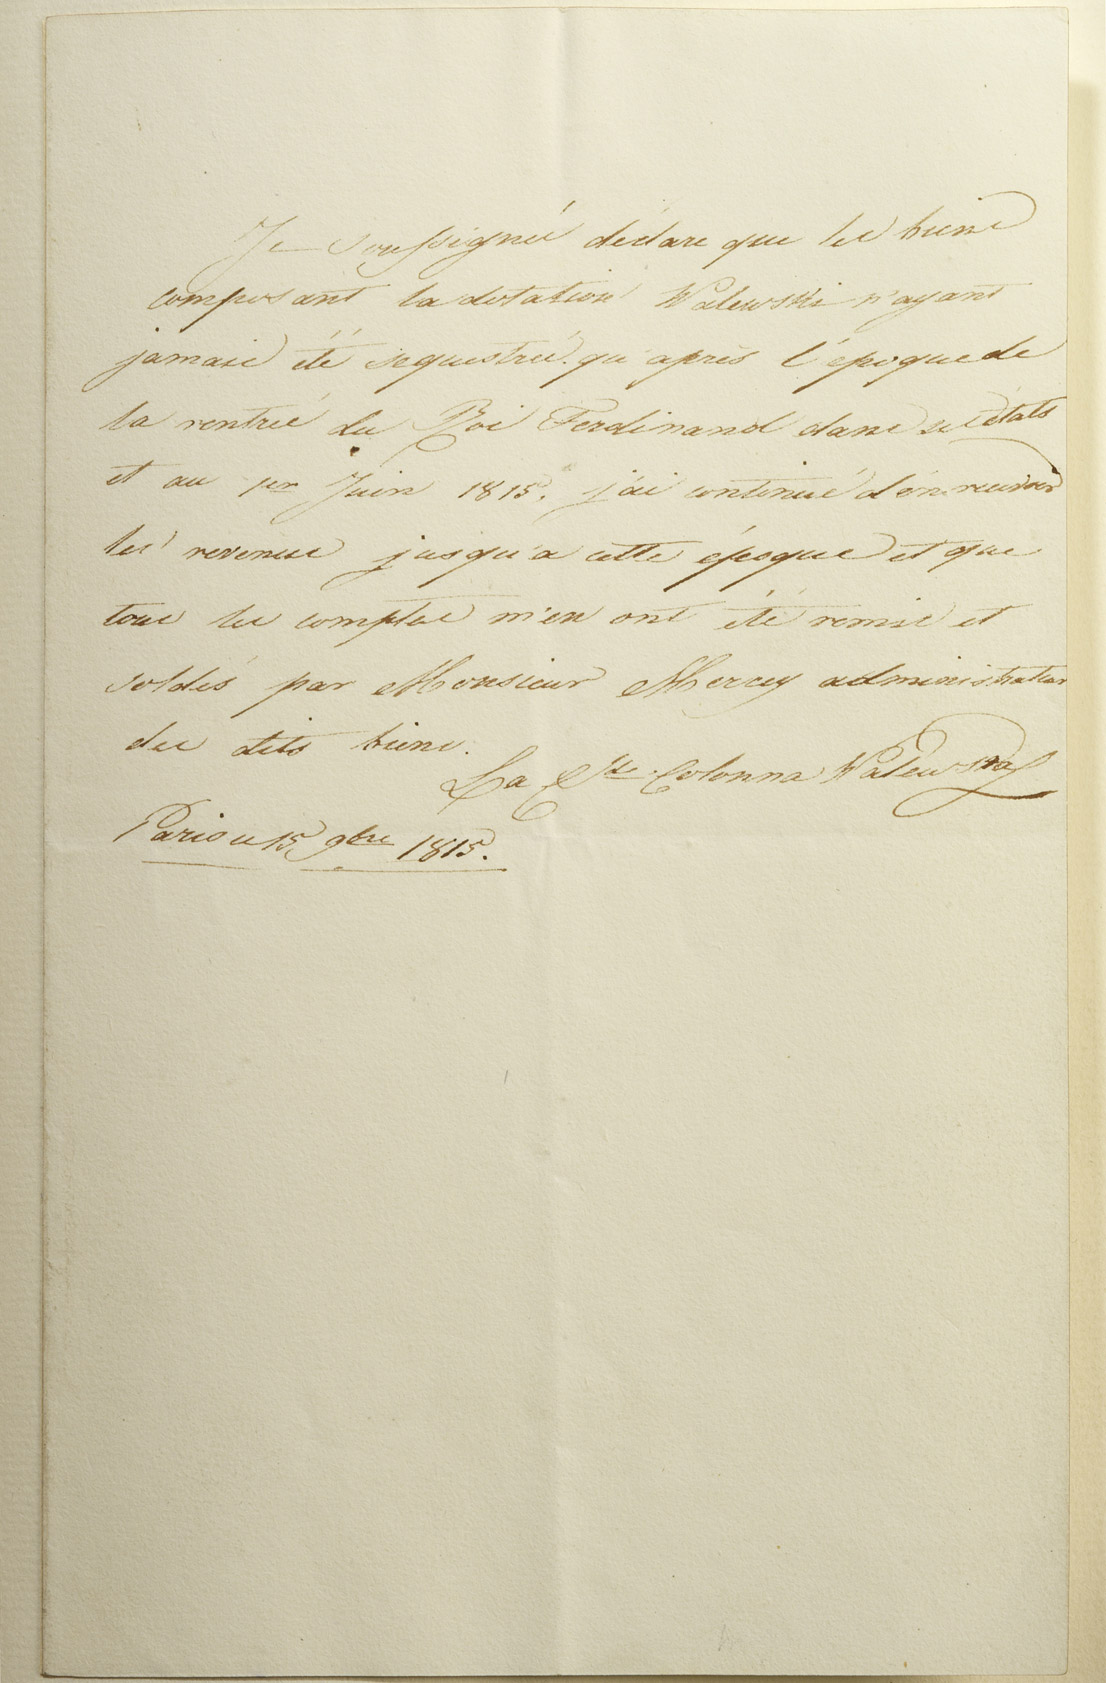 Déclaration de Marie Walewska concernant la dotation Walewski - Patrimoine Charles-André COLONNA WALEWSKI, en ligne directe de Napoléon